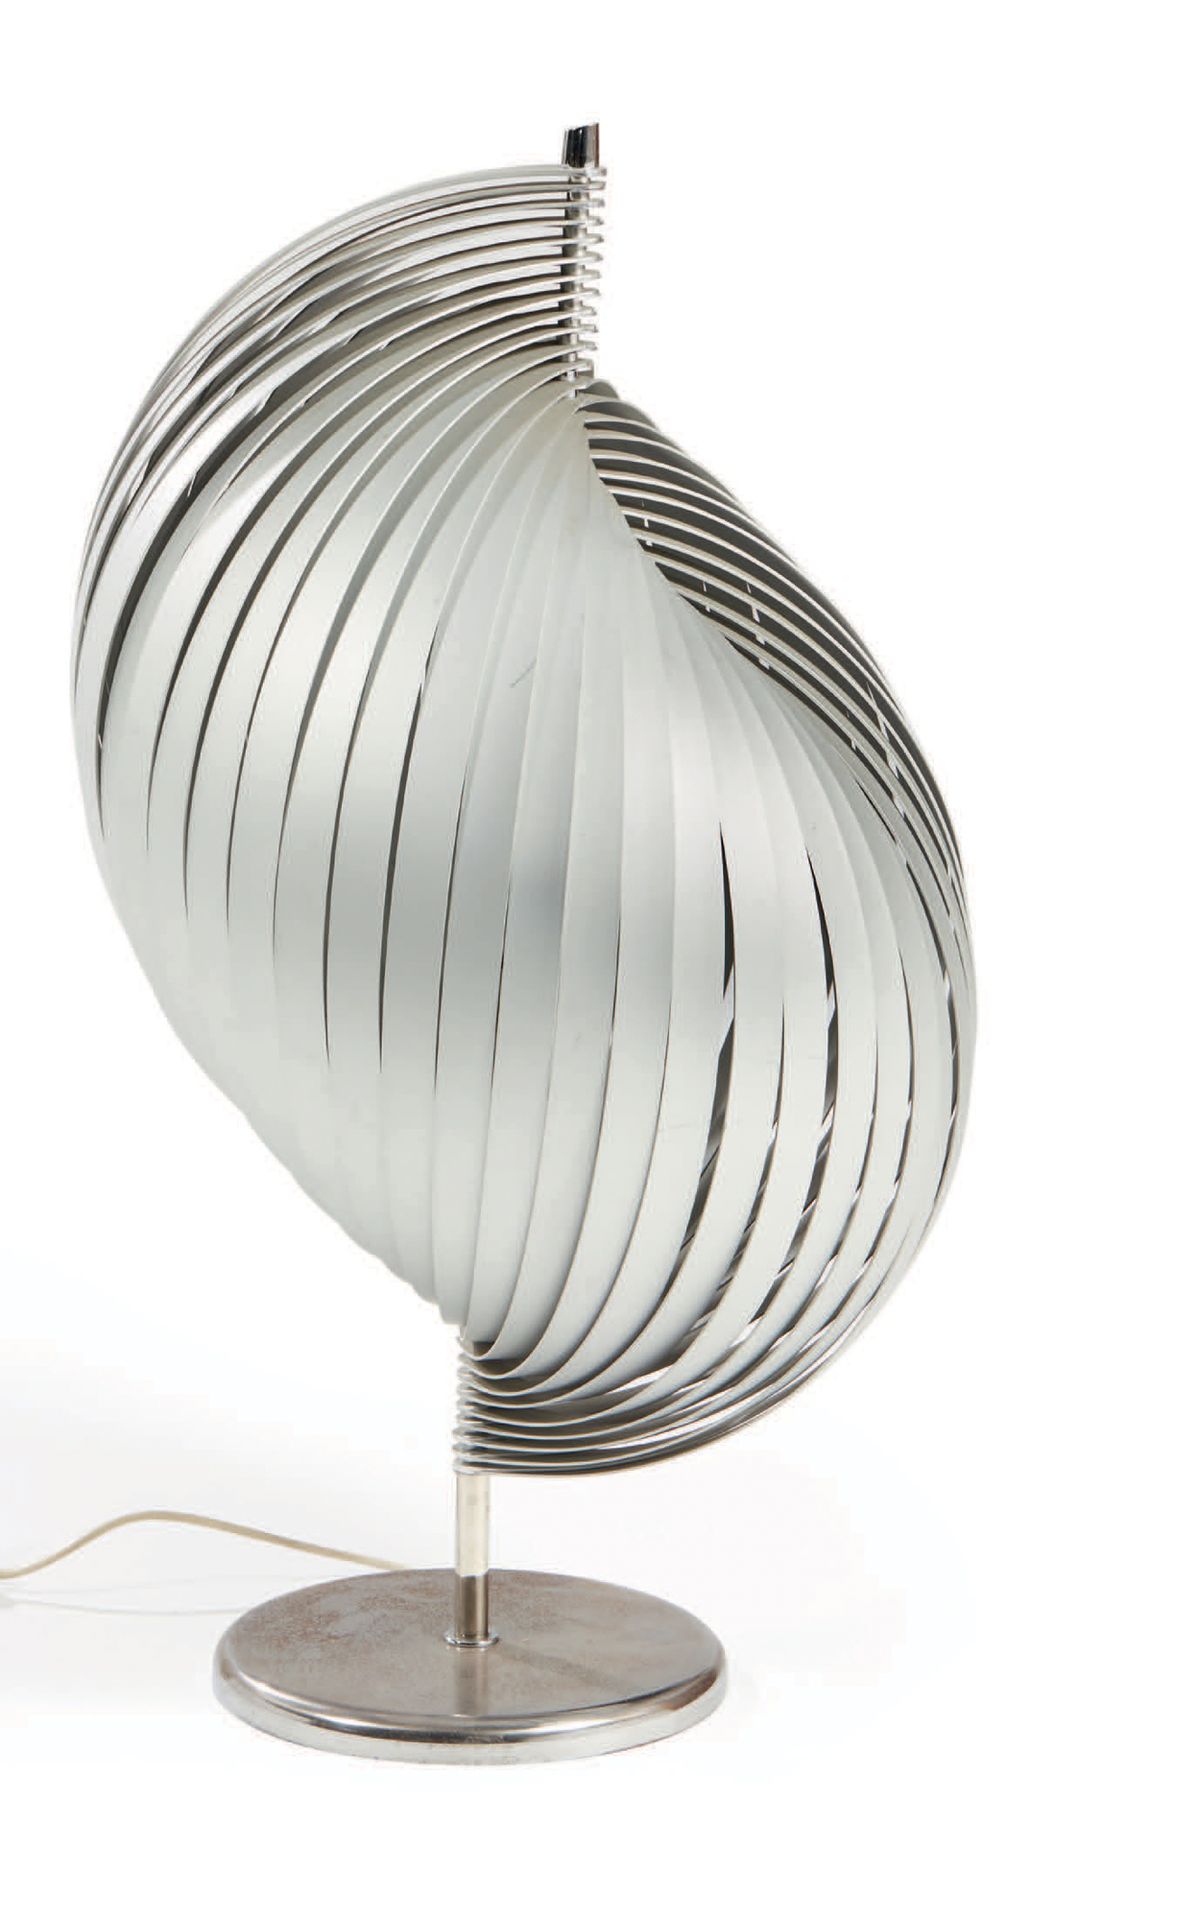 HENRI MATHIEU (XXE) 
Lampe de sol en métal chromé modèle «Nickelor»
H : 90 cm